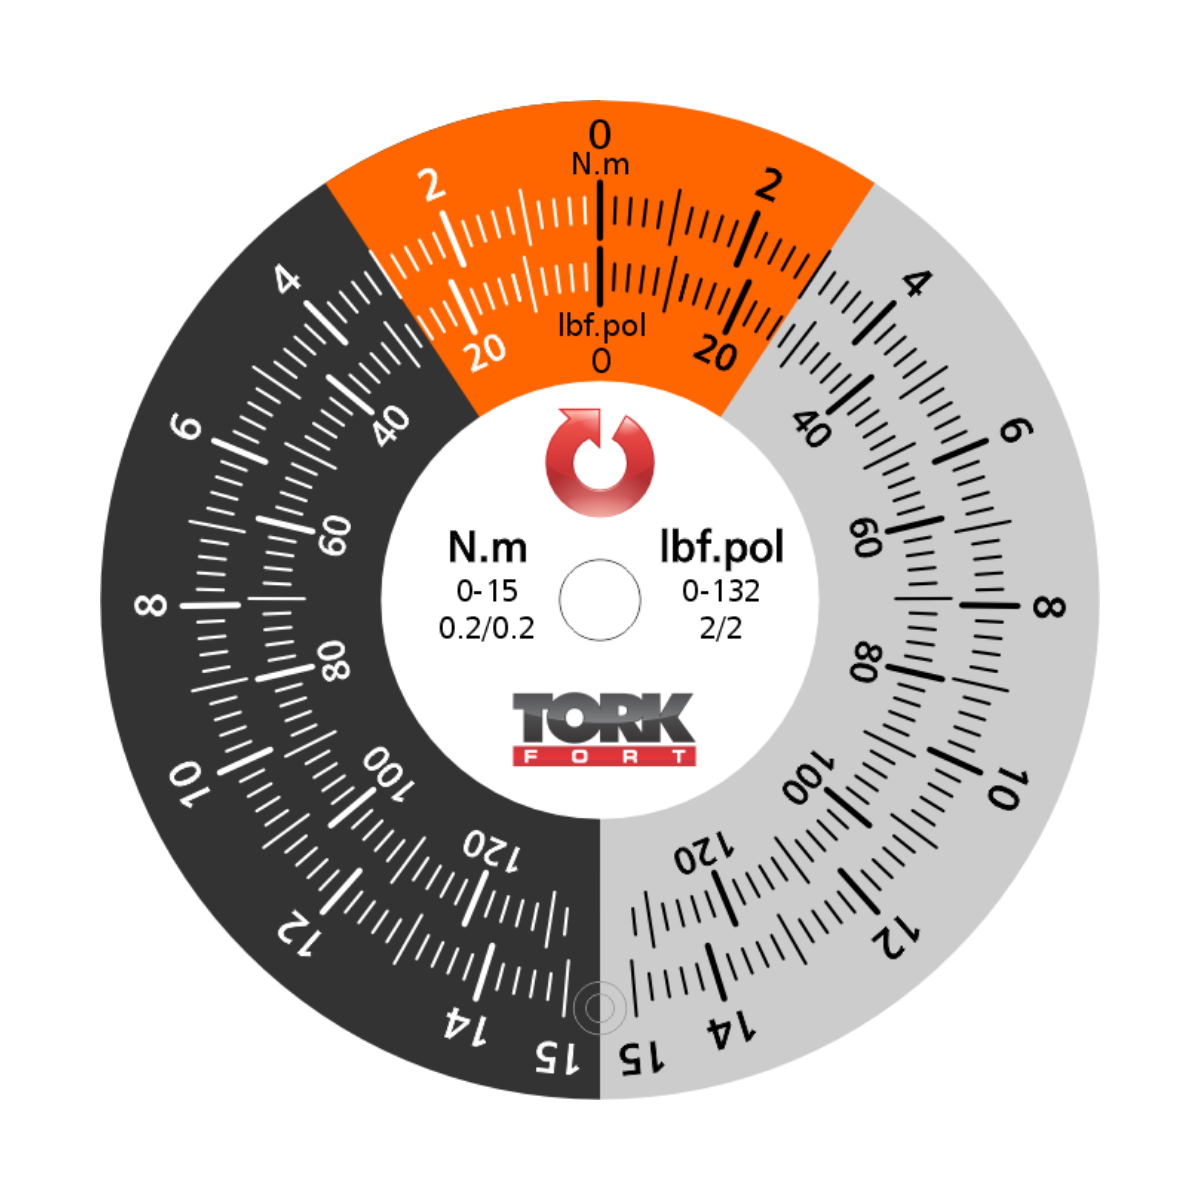 TRNA15PA Torquímetro Relógio 0 a 15 N.m encaixe  3/8"com Laudo RBC